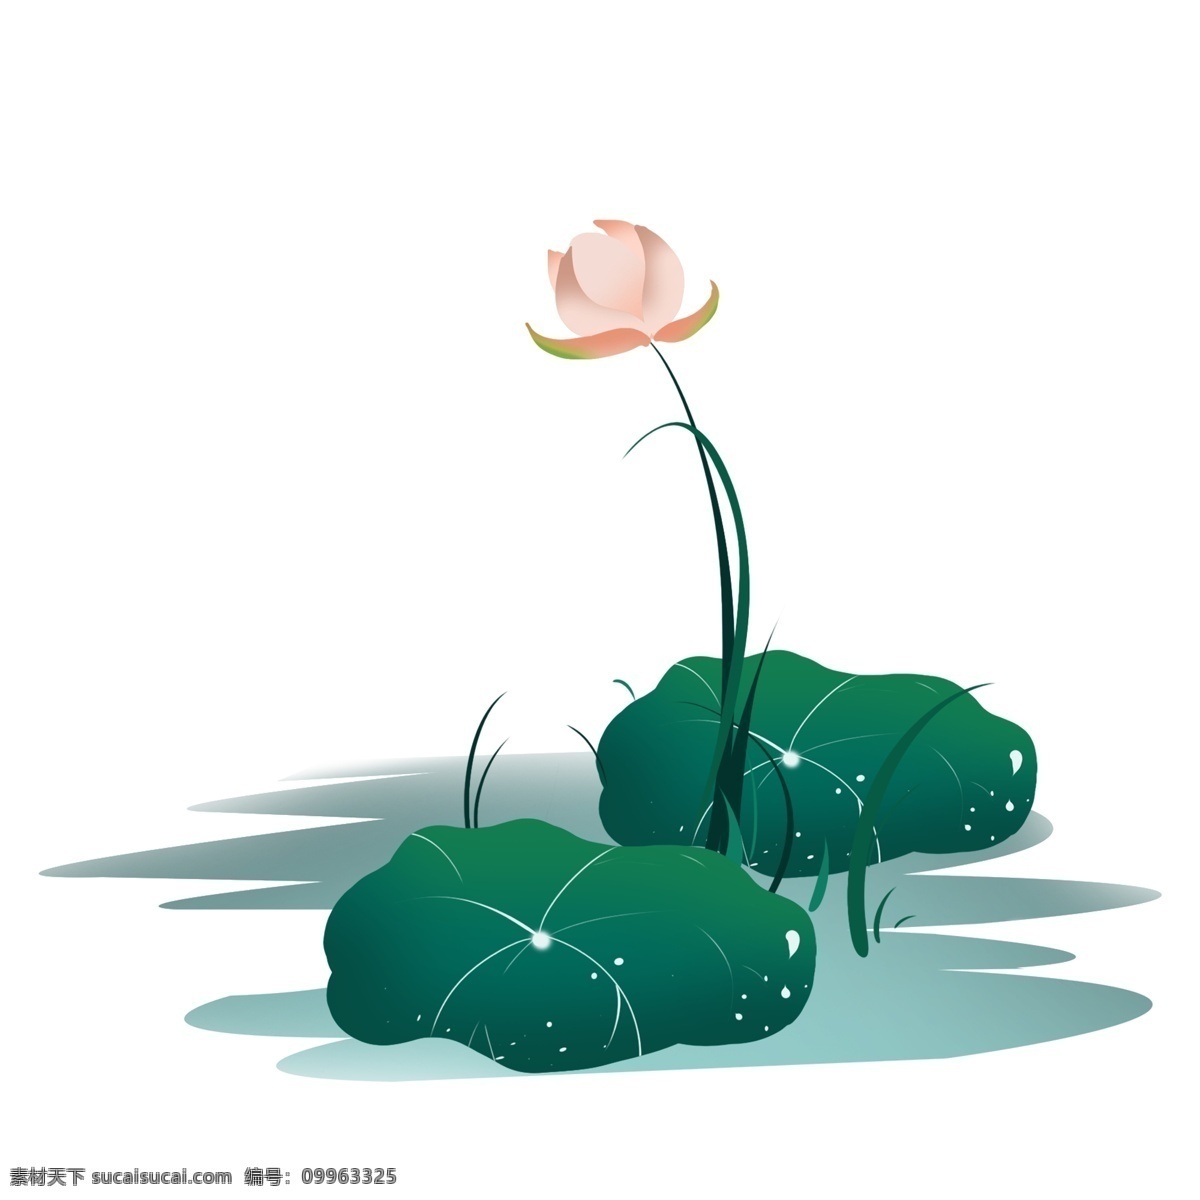 绿色 荷花 卡通 插画 荷叶 绿色的荷叶 唯美的植物 卡通植物插画 荷花插画 盛开的花朵 植物插画